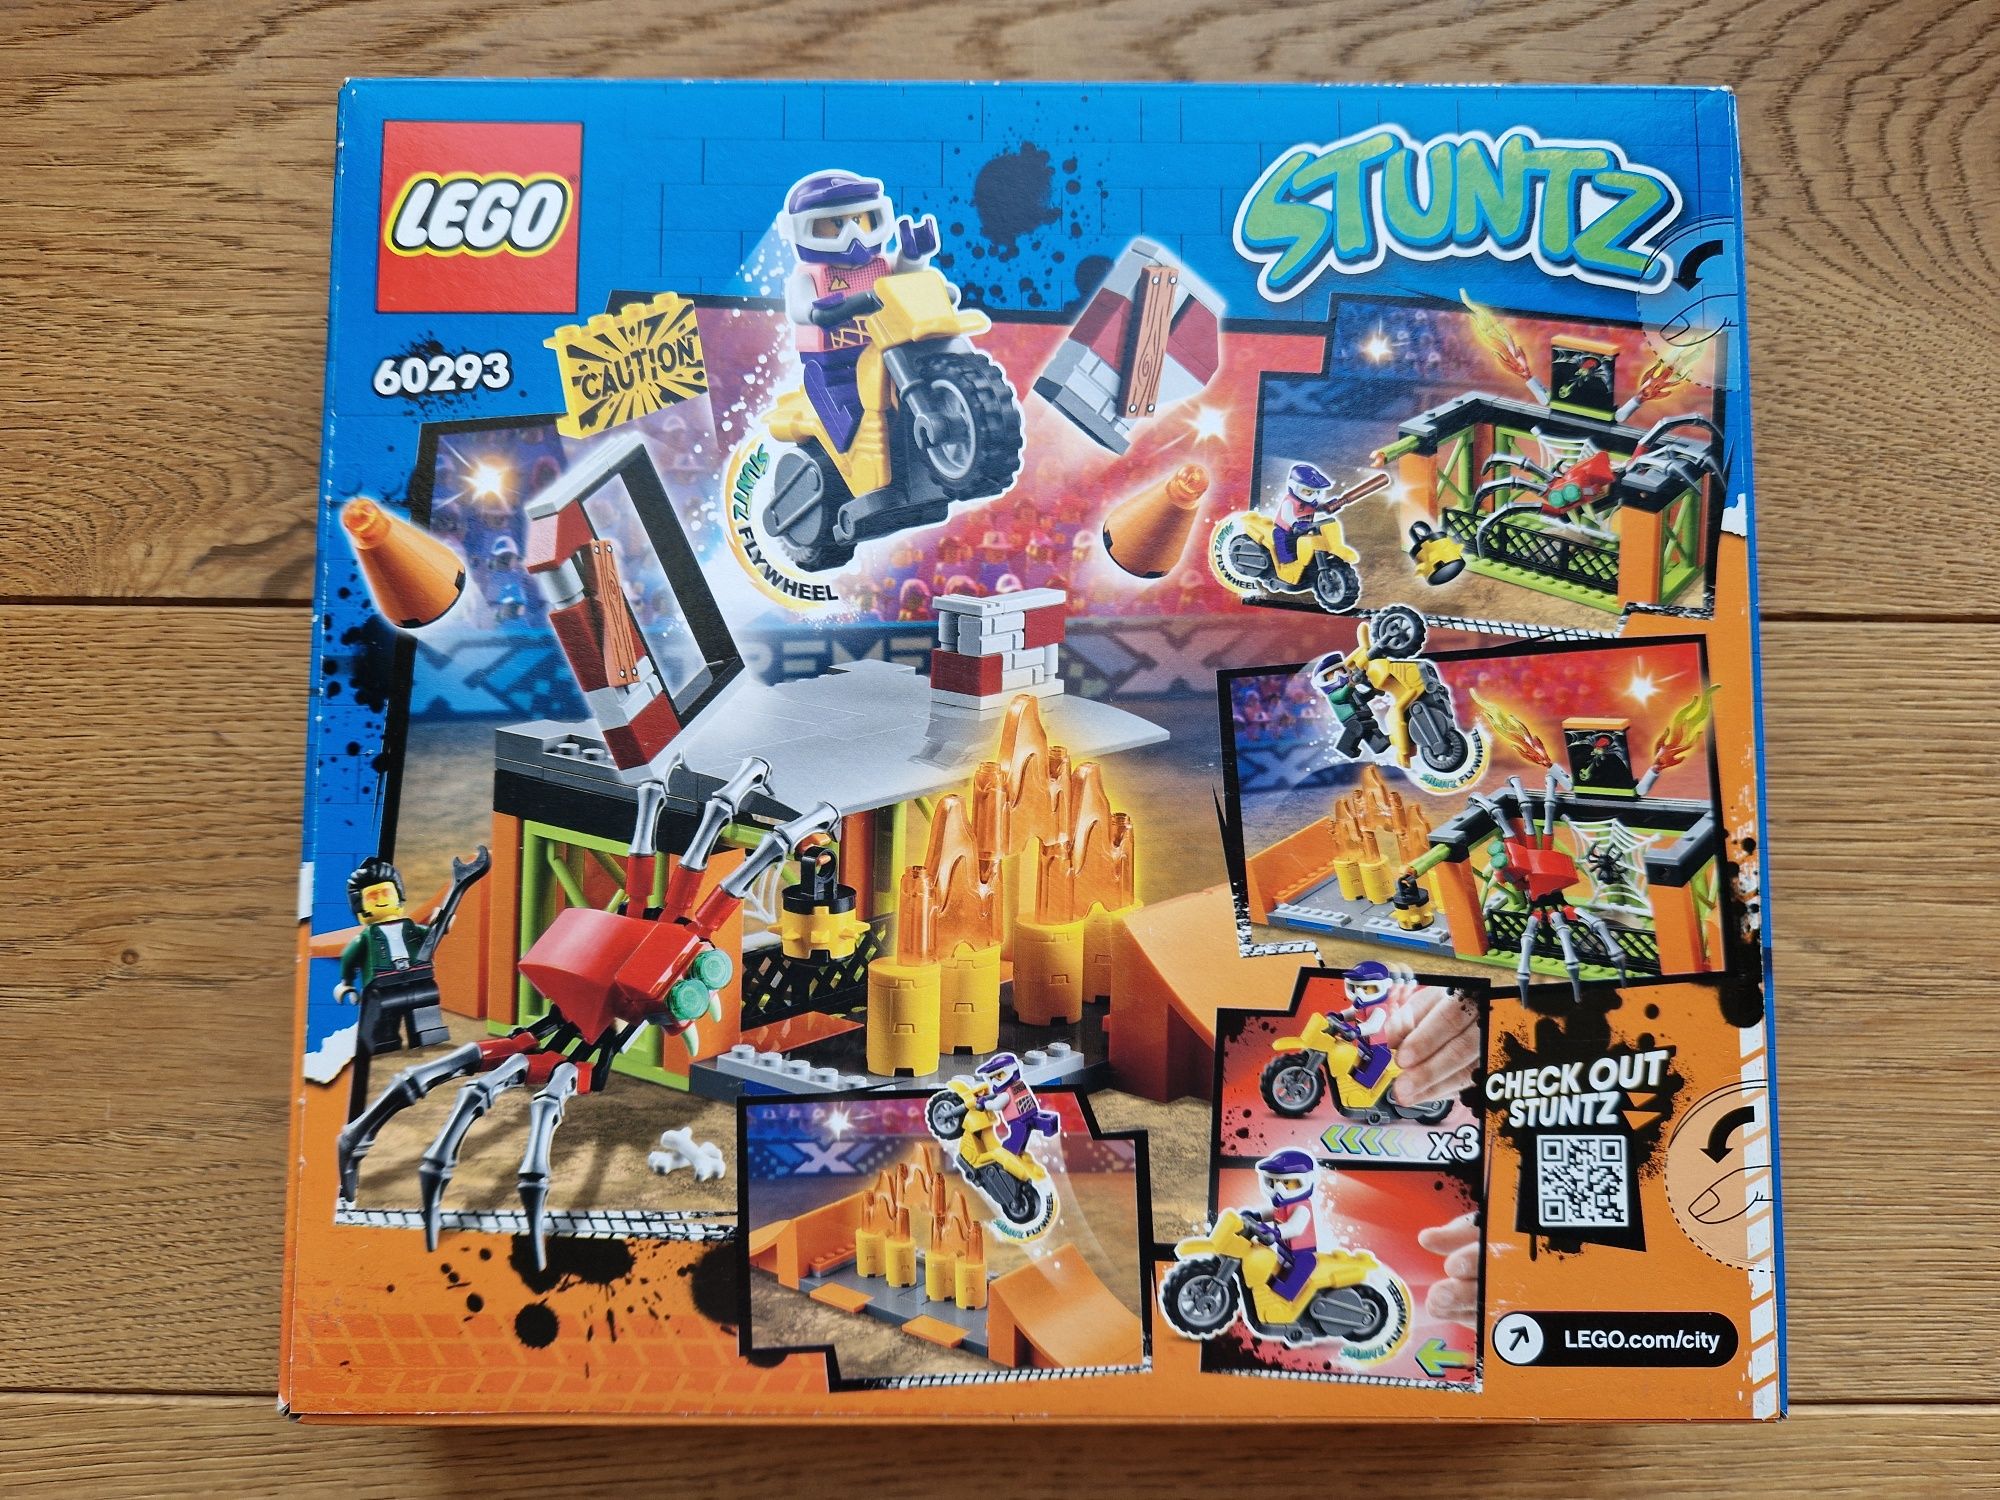 NOWE klocki Lego 60293 Stuntz wiek 5+